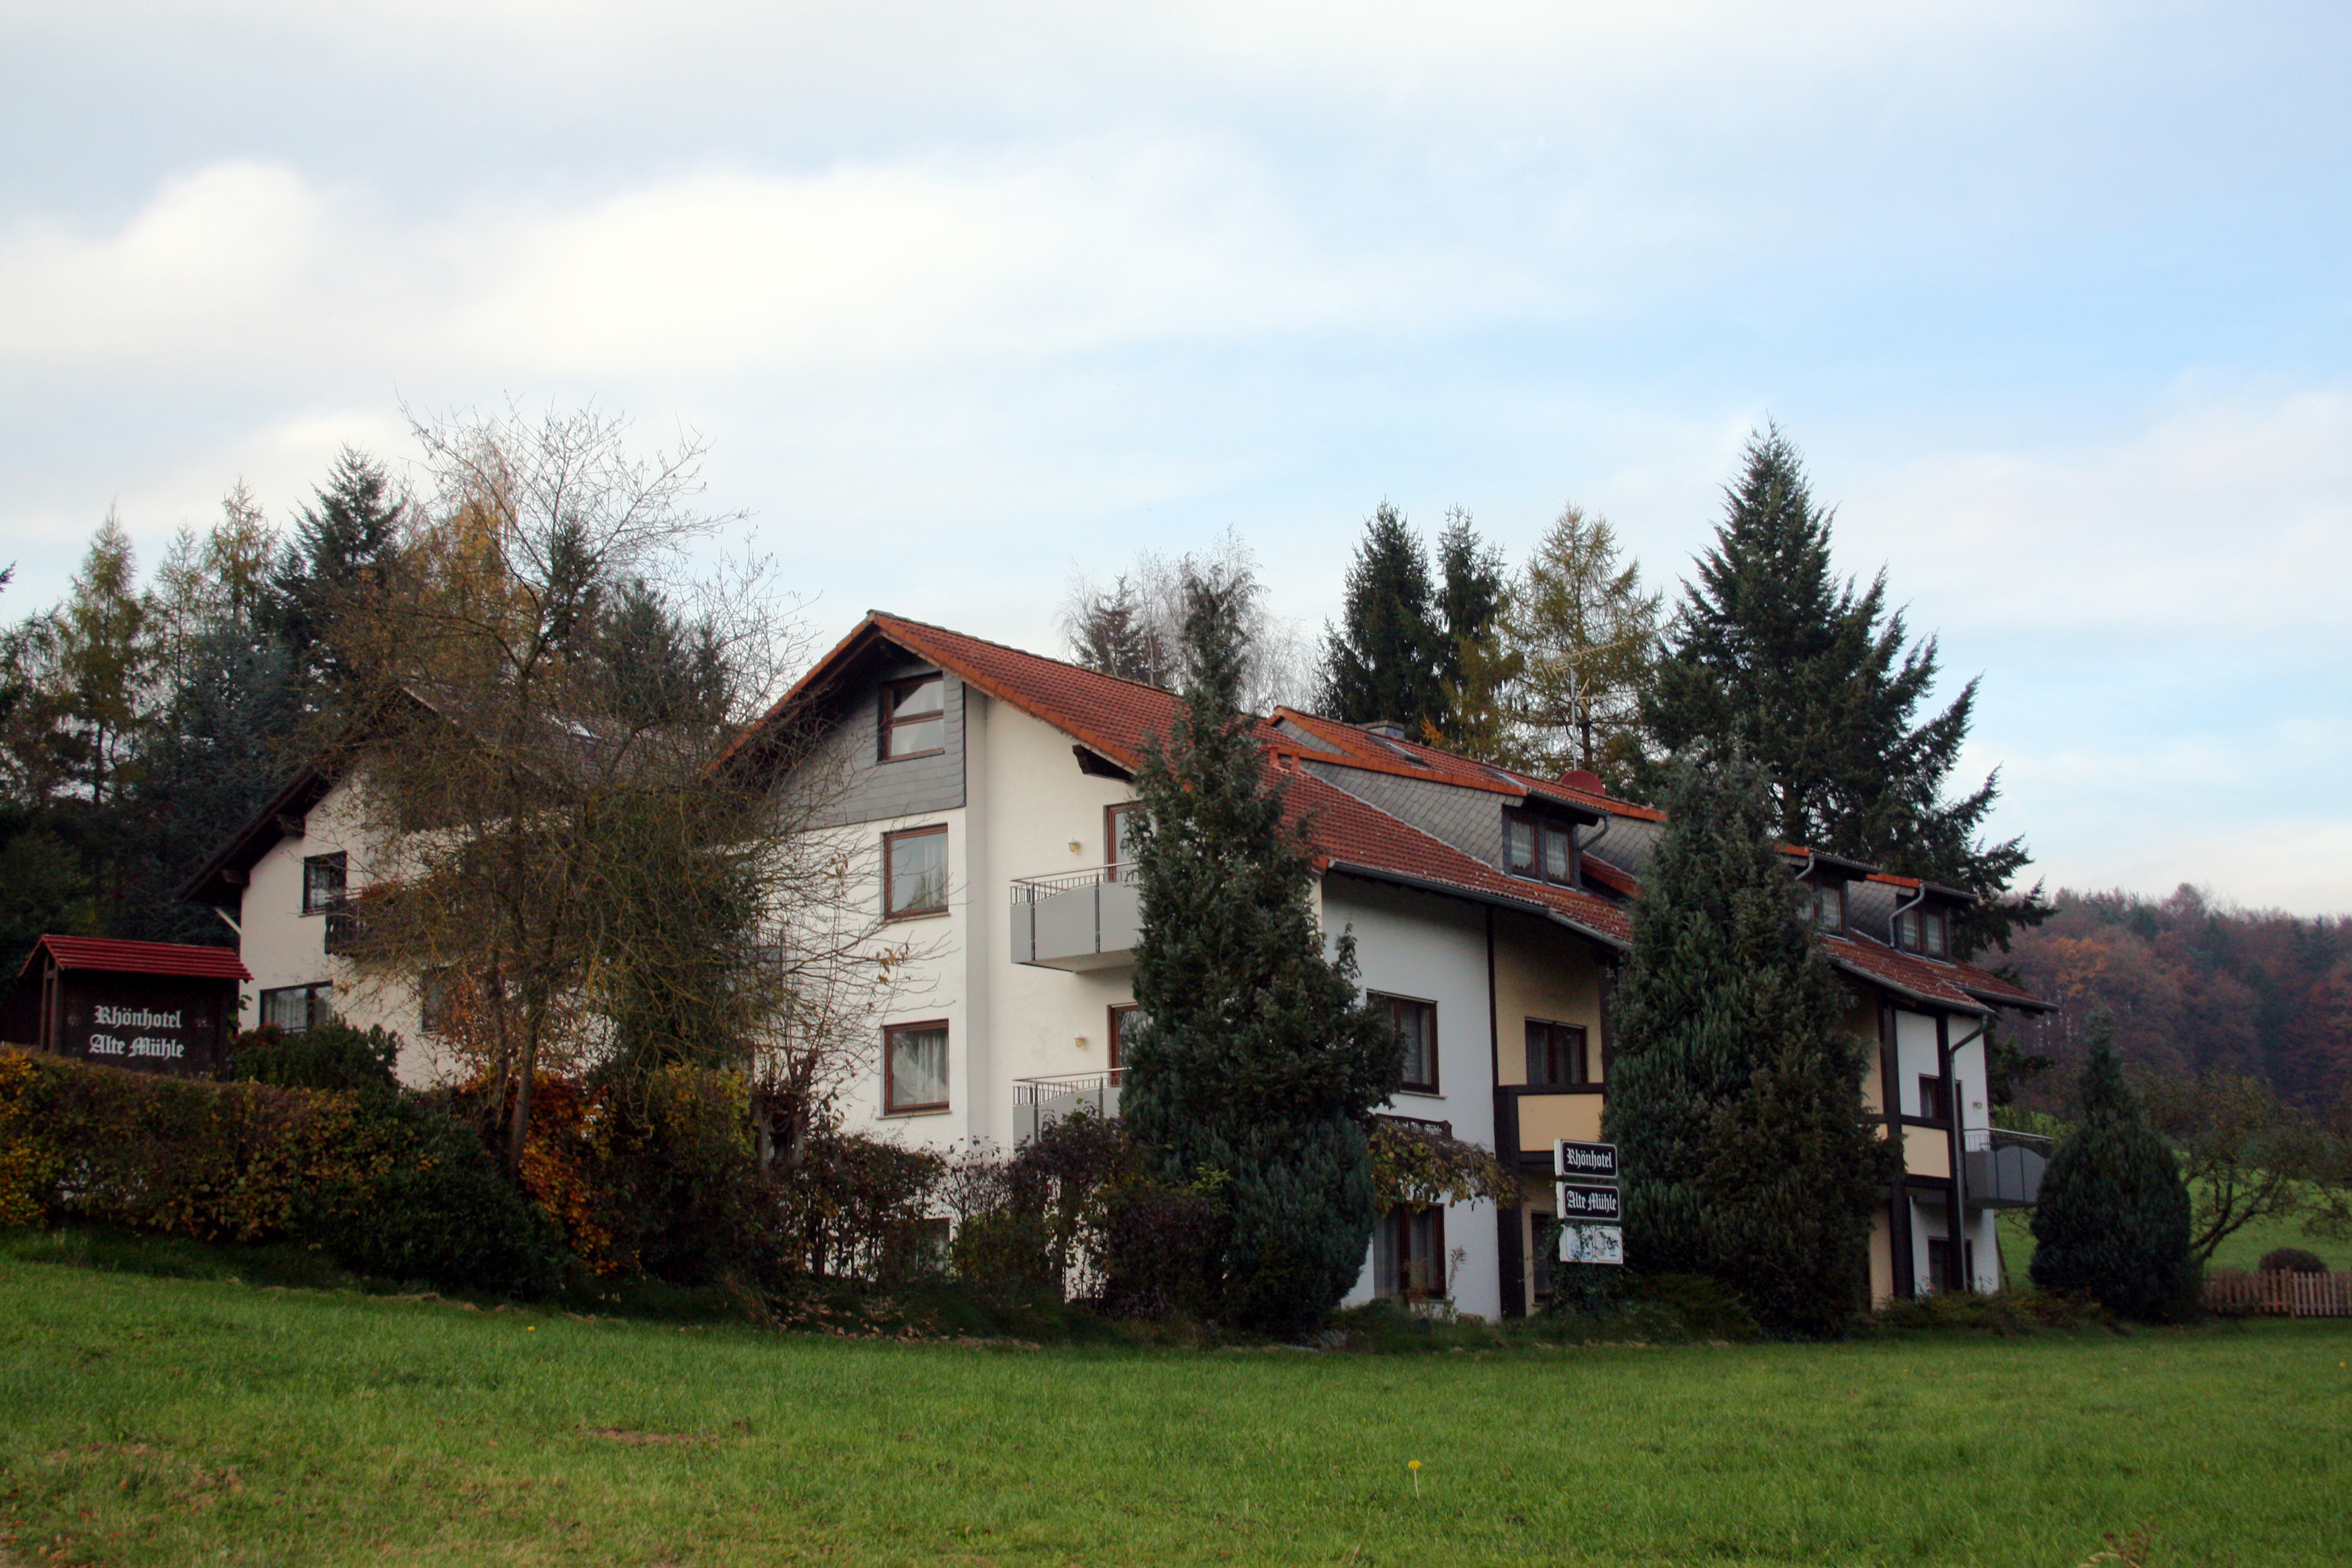 Rhönhotel Alte Mühle, Ebersburg.
